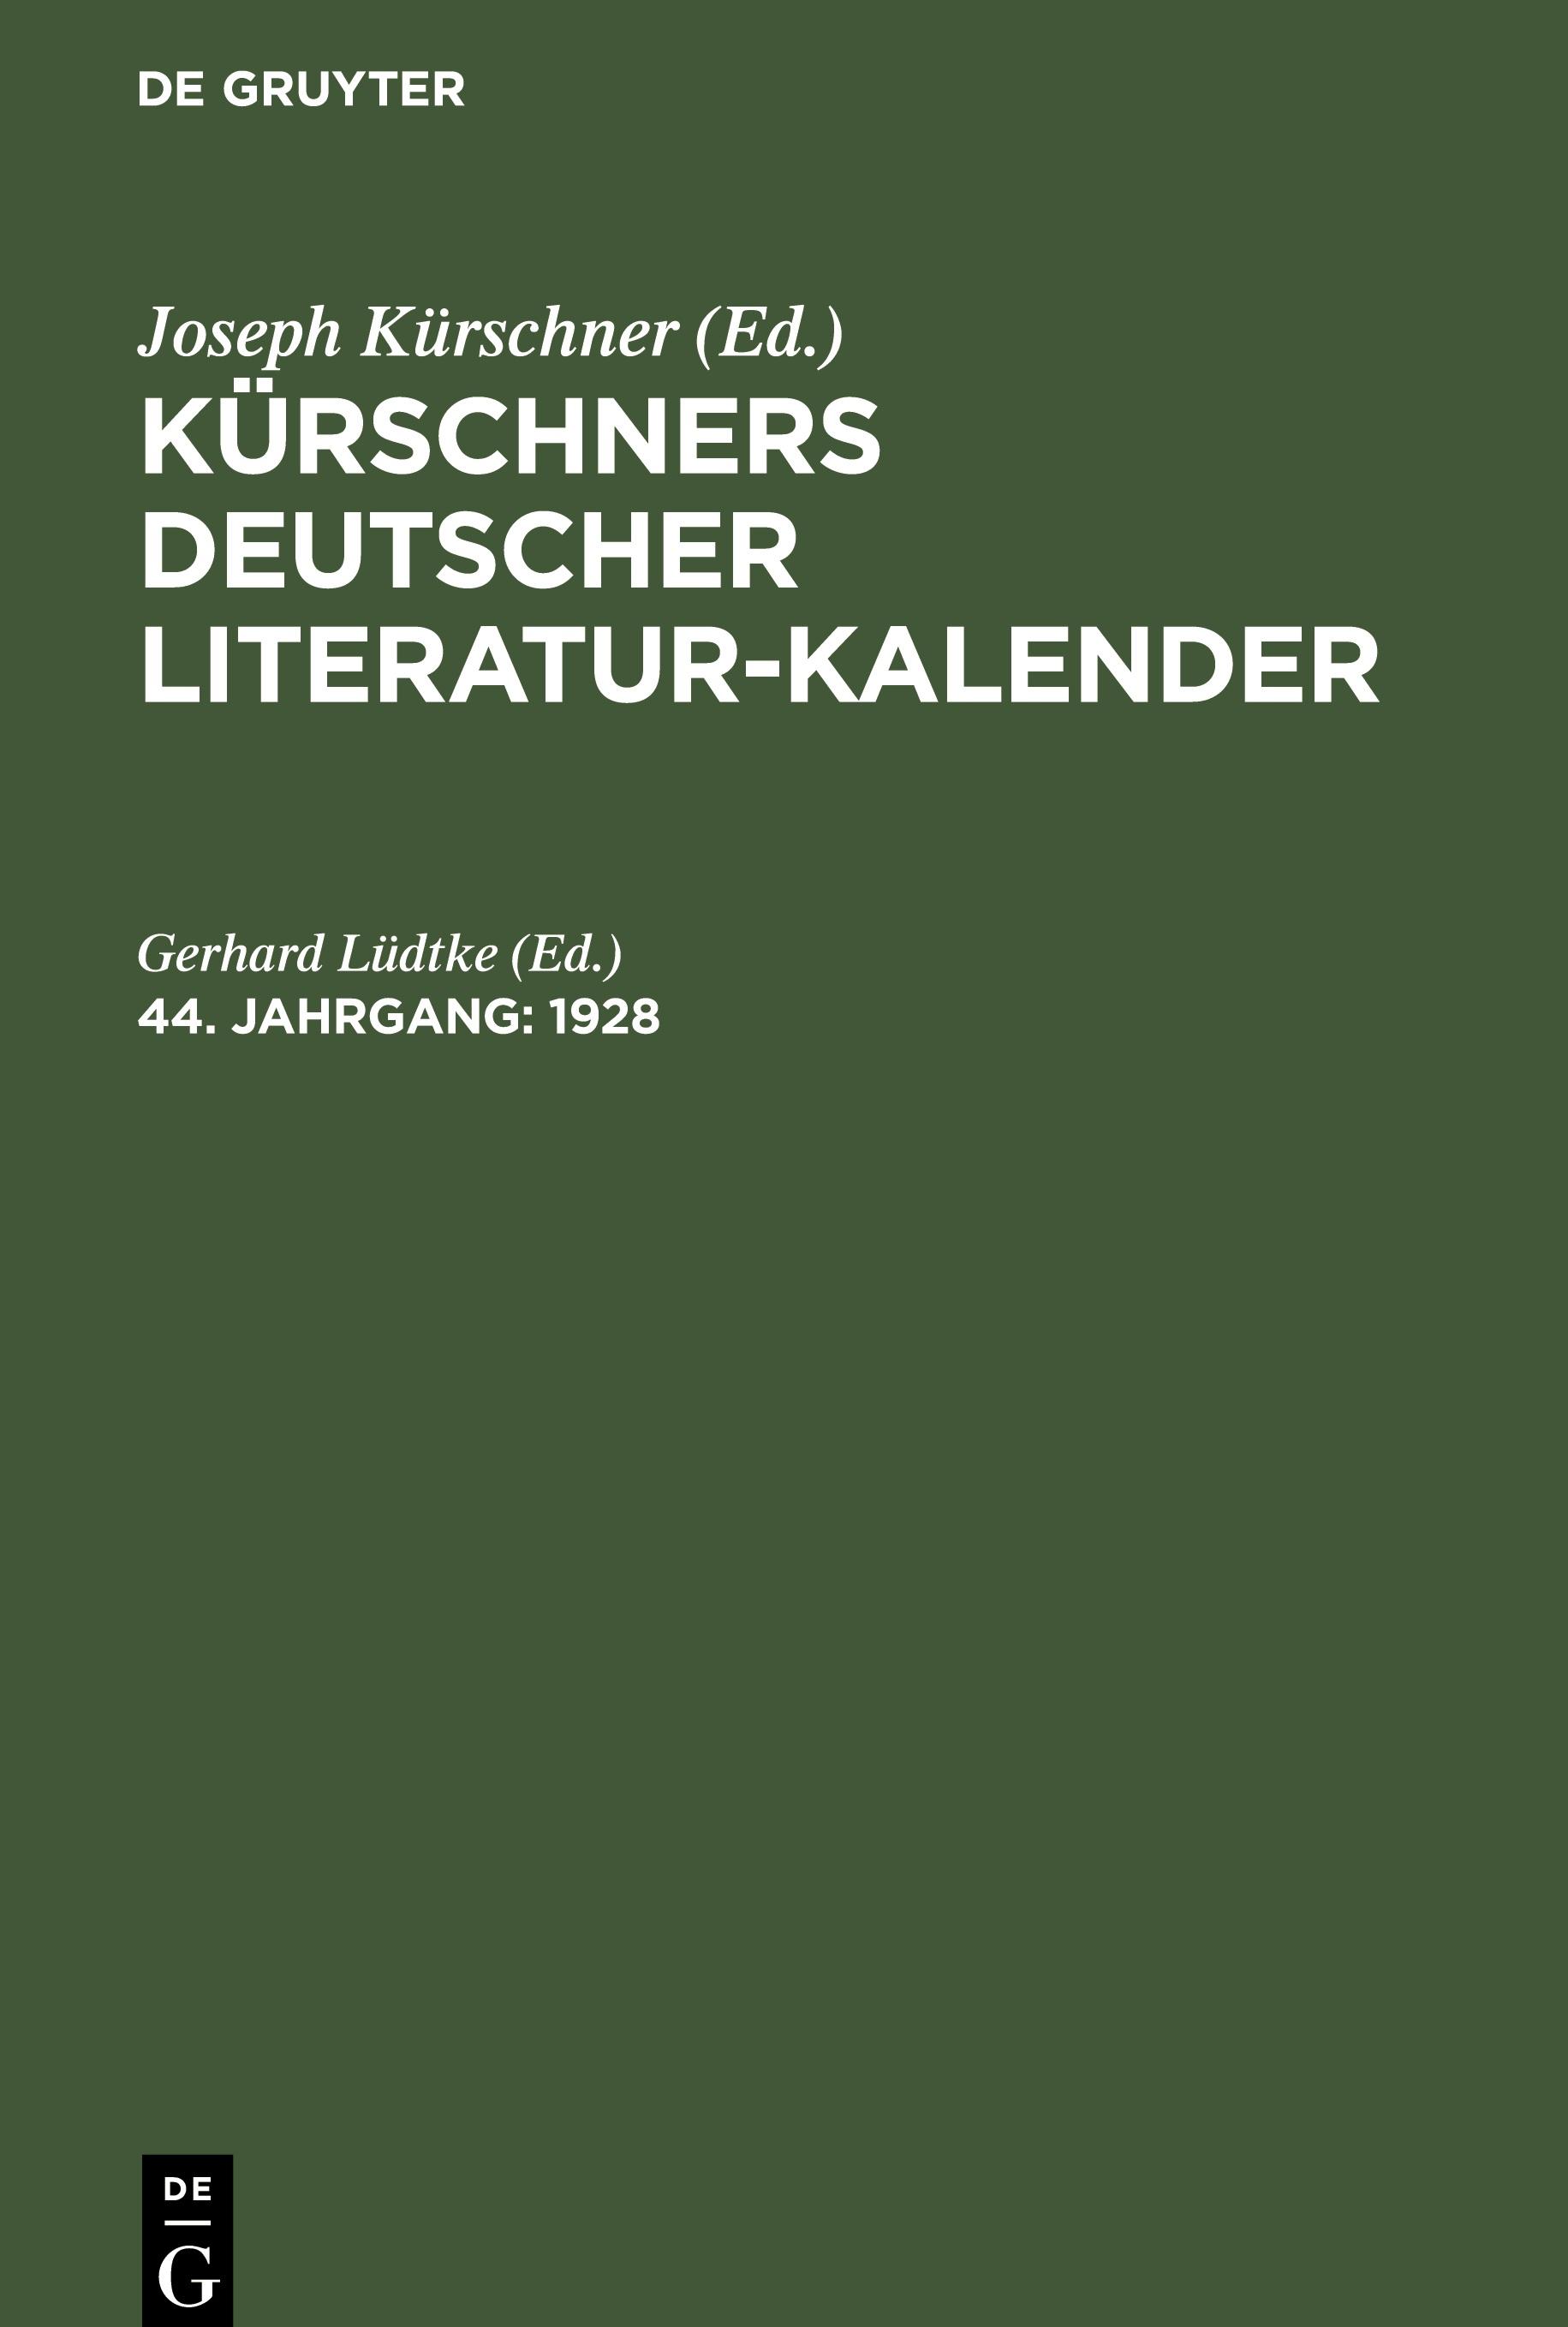 Kuerschners Deutscher Literatur-Kalender, 44. Jahrgang, Kuerschners Deutscher Literatur-Kalender (1928)